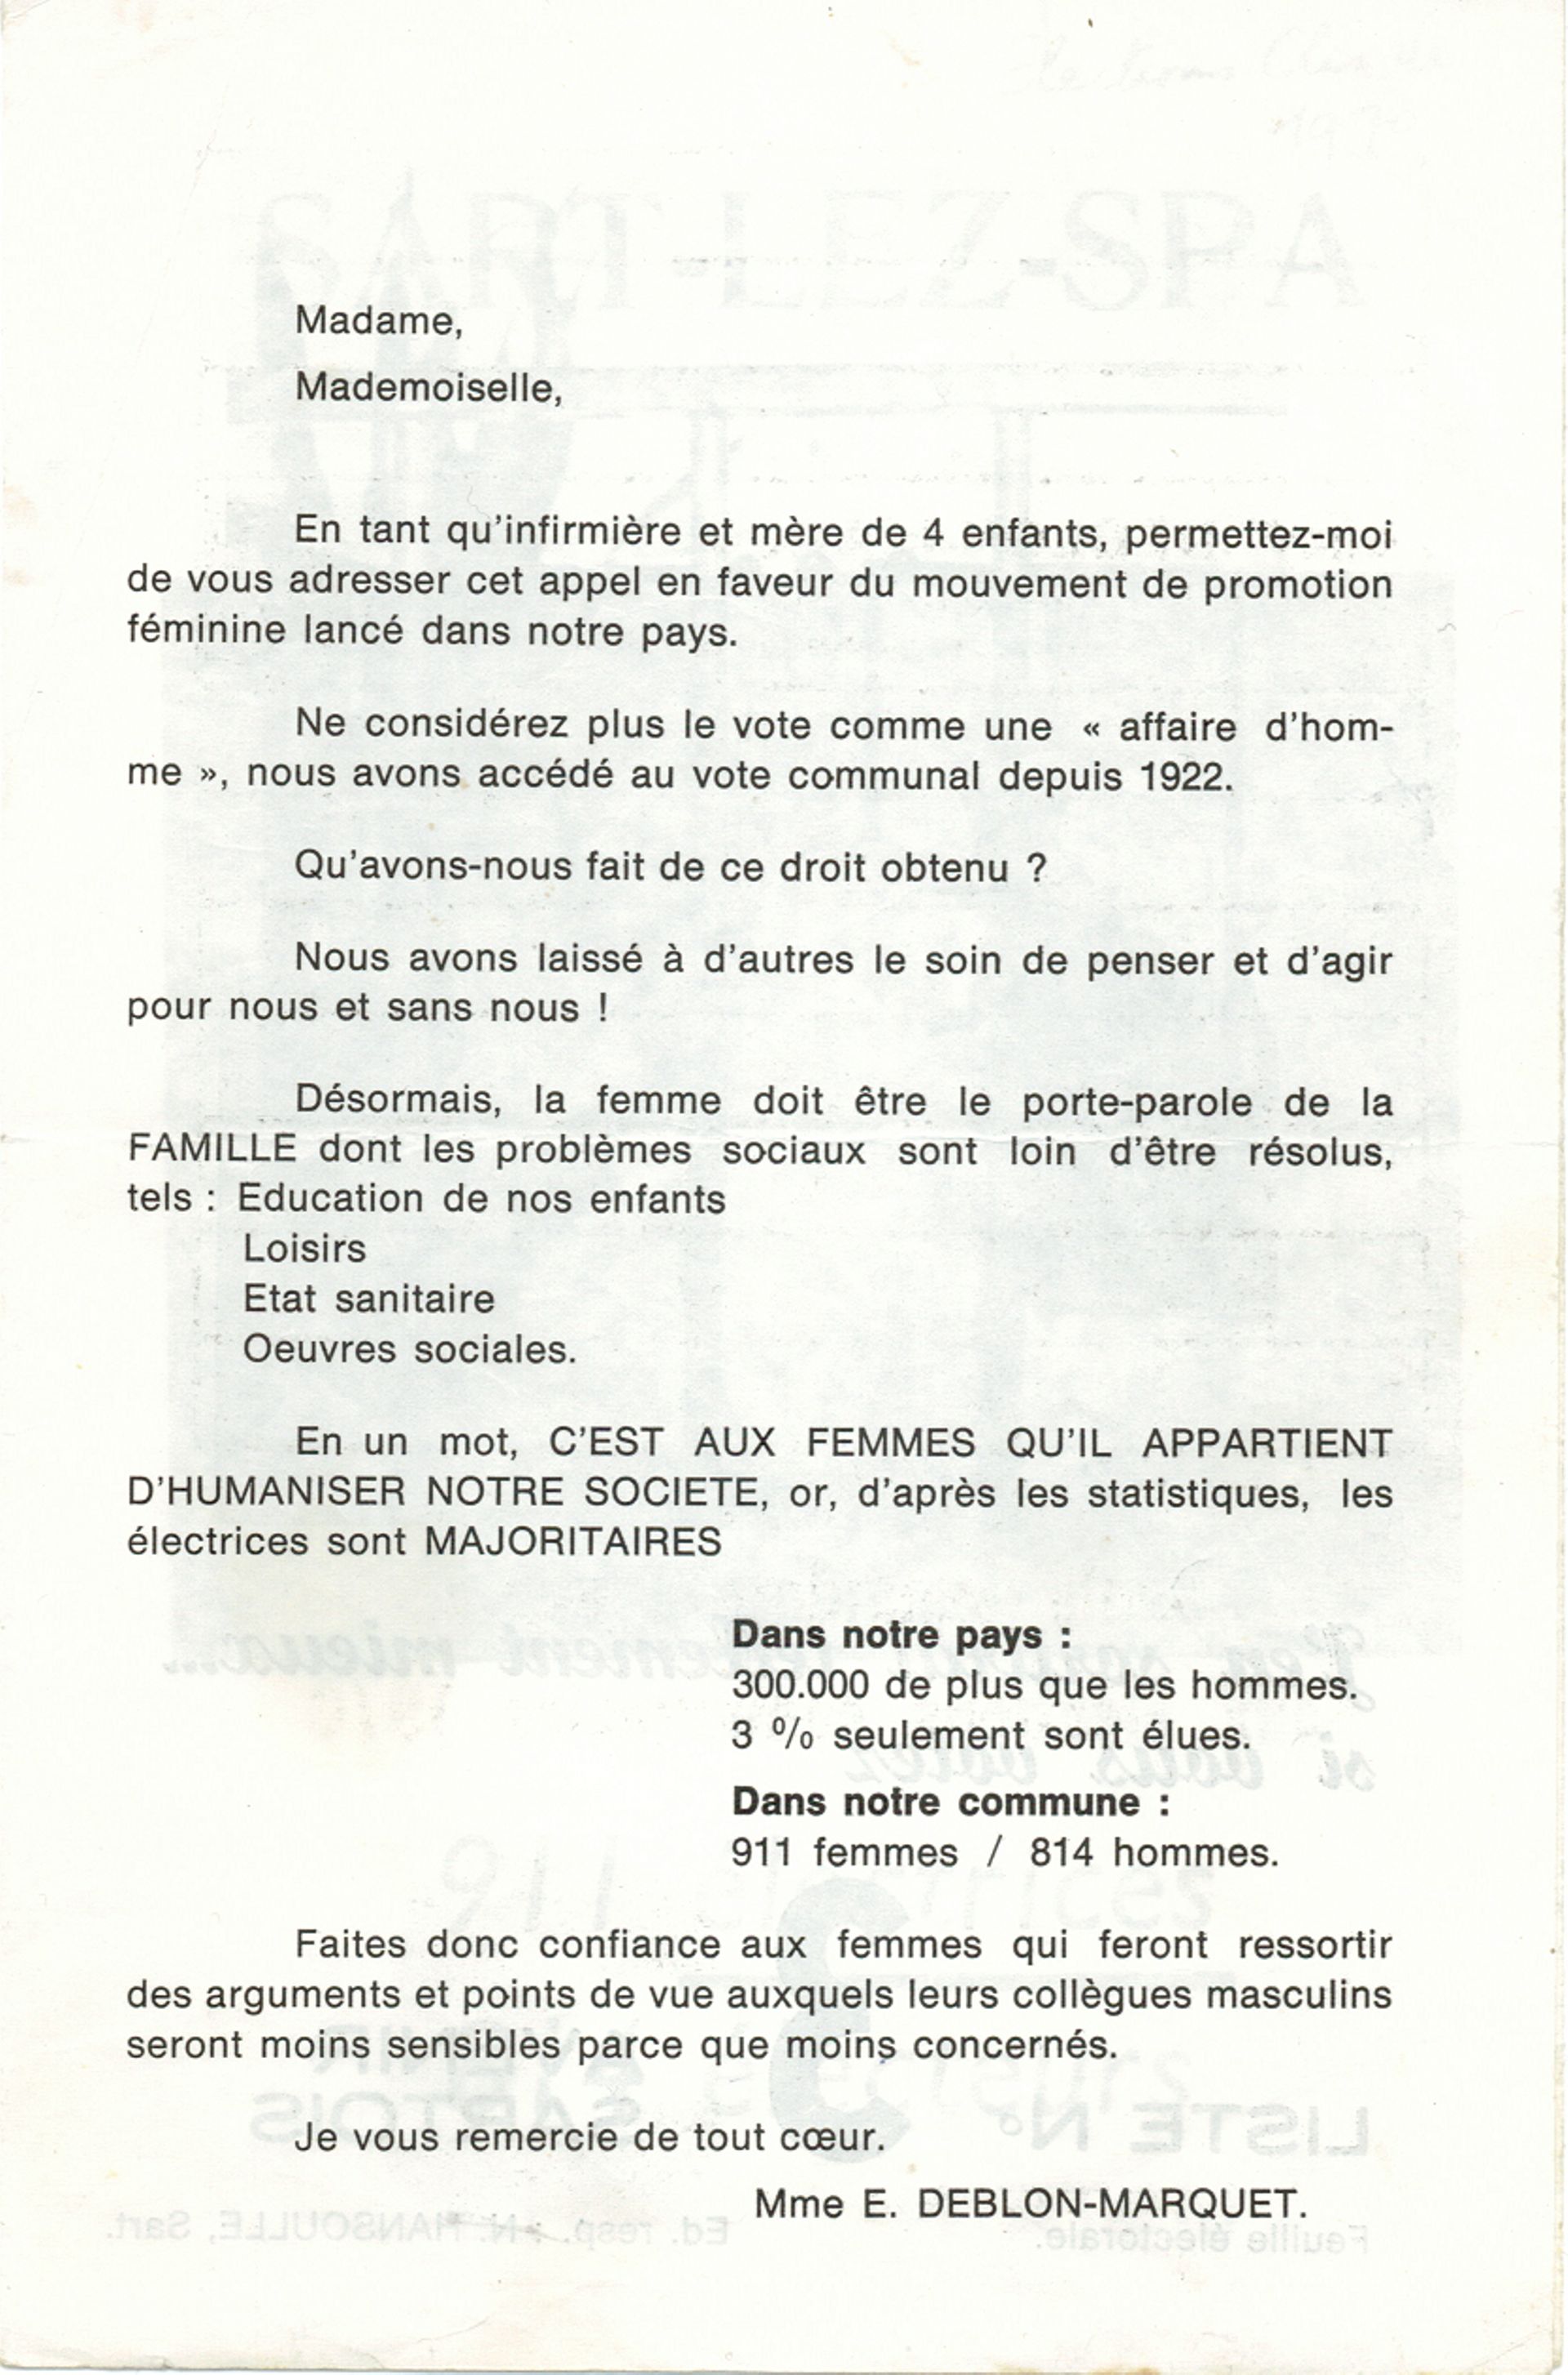 Tract de Lucy Deblon Marquet pour les élections communales de 1970.